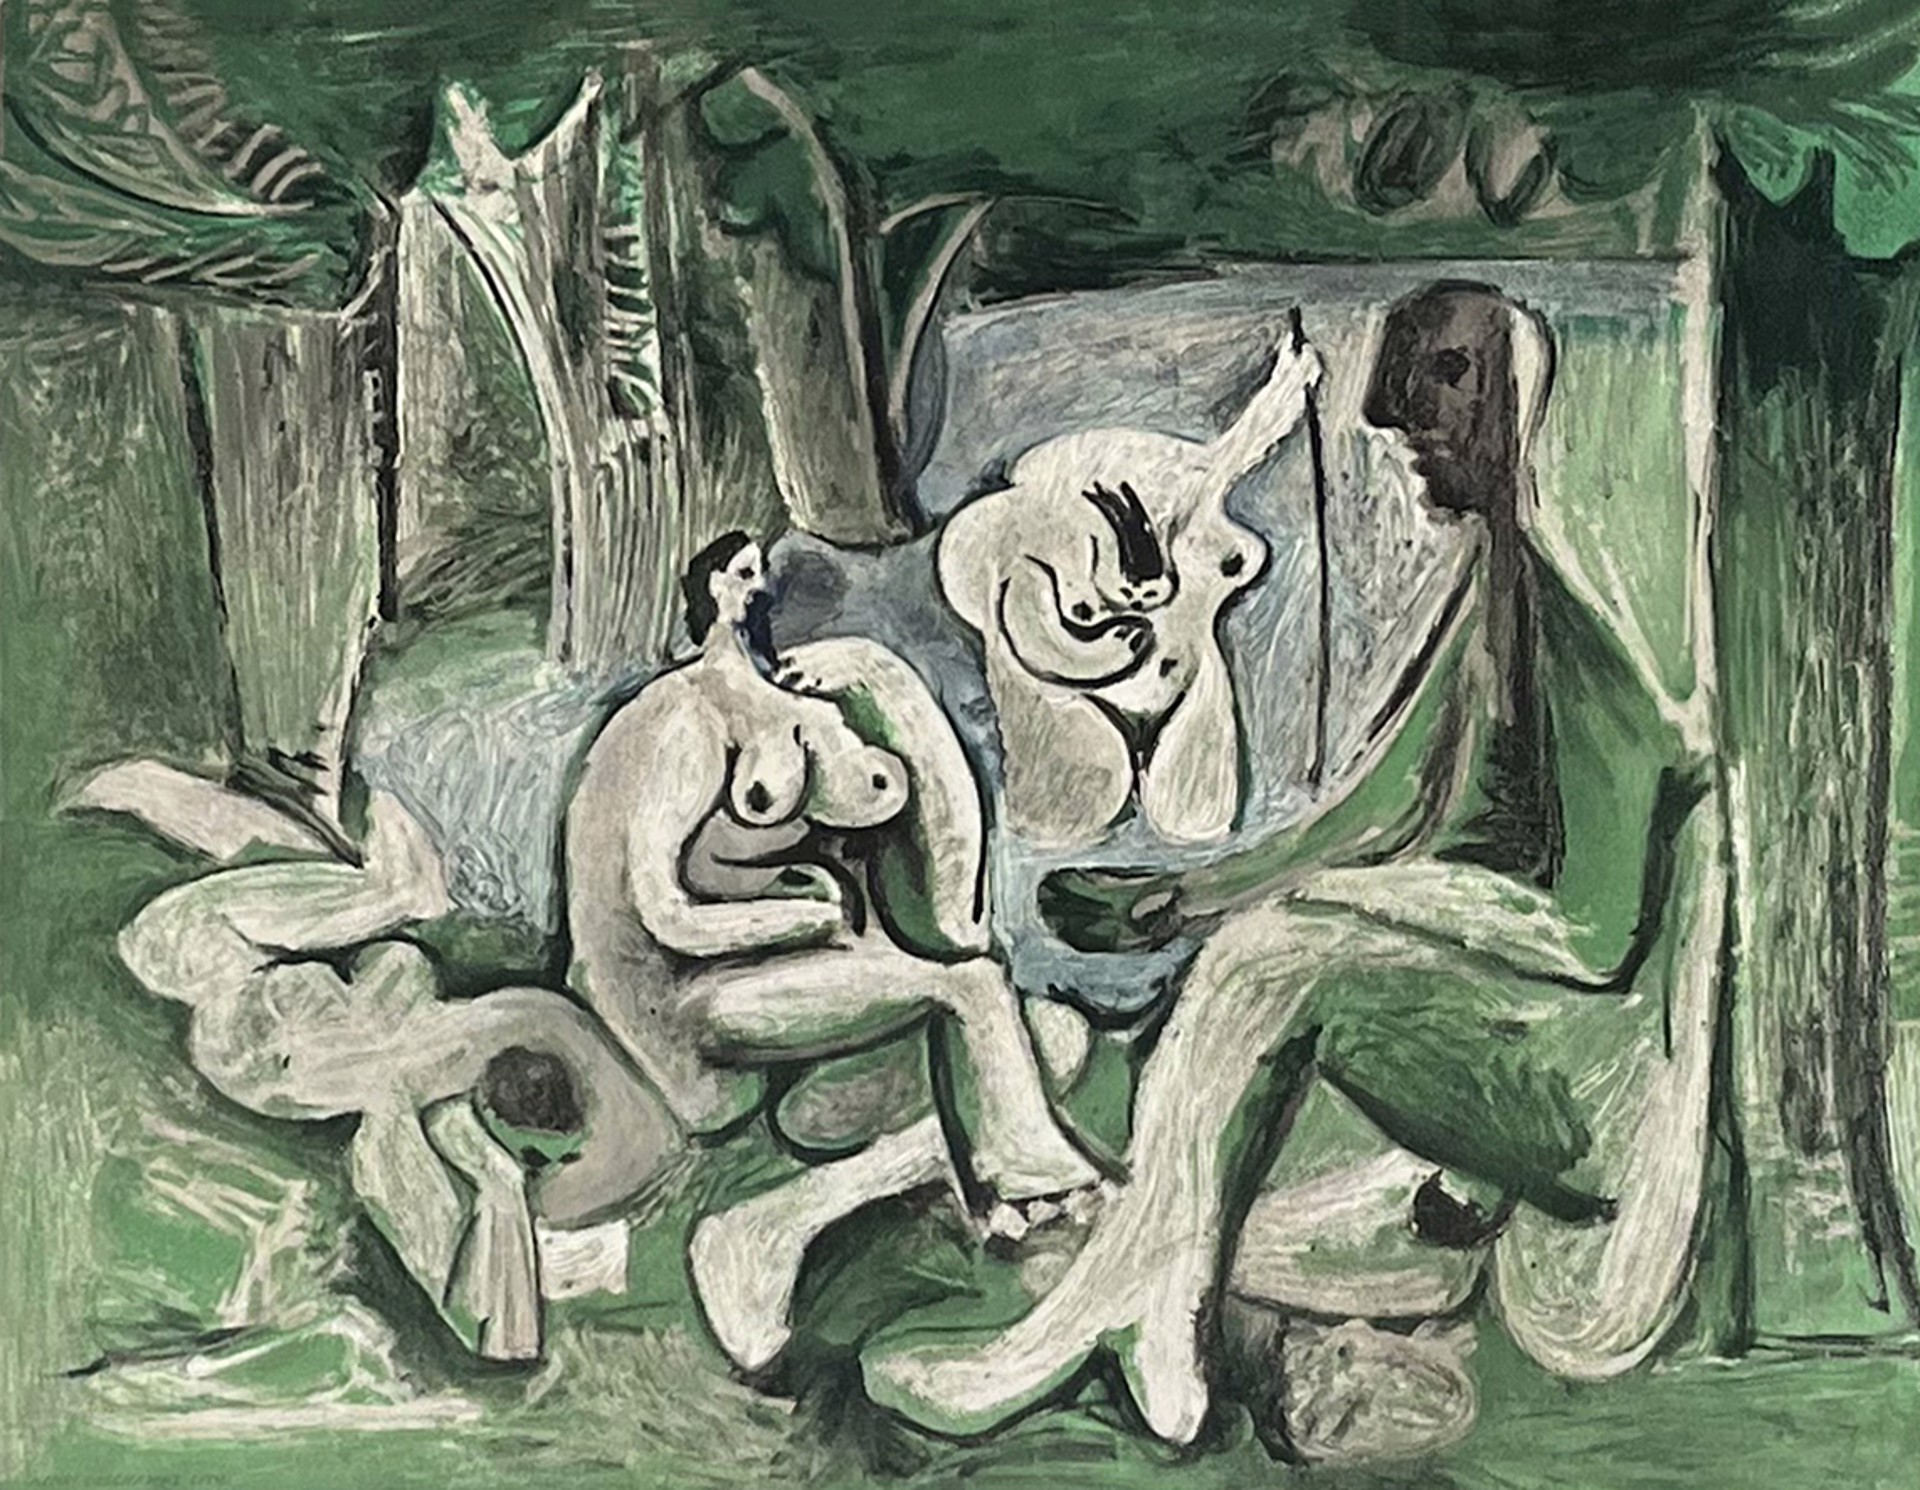 Picasso, "Le Déjeuner Sur L'herbe" Printed by Imprimerie Moderne du Lion by European